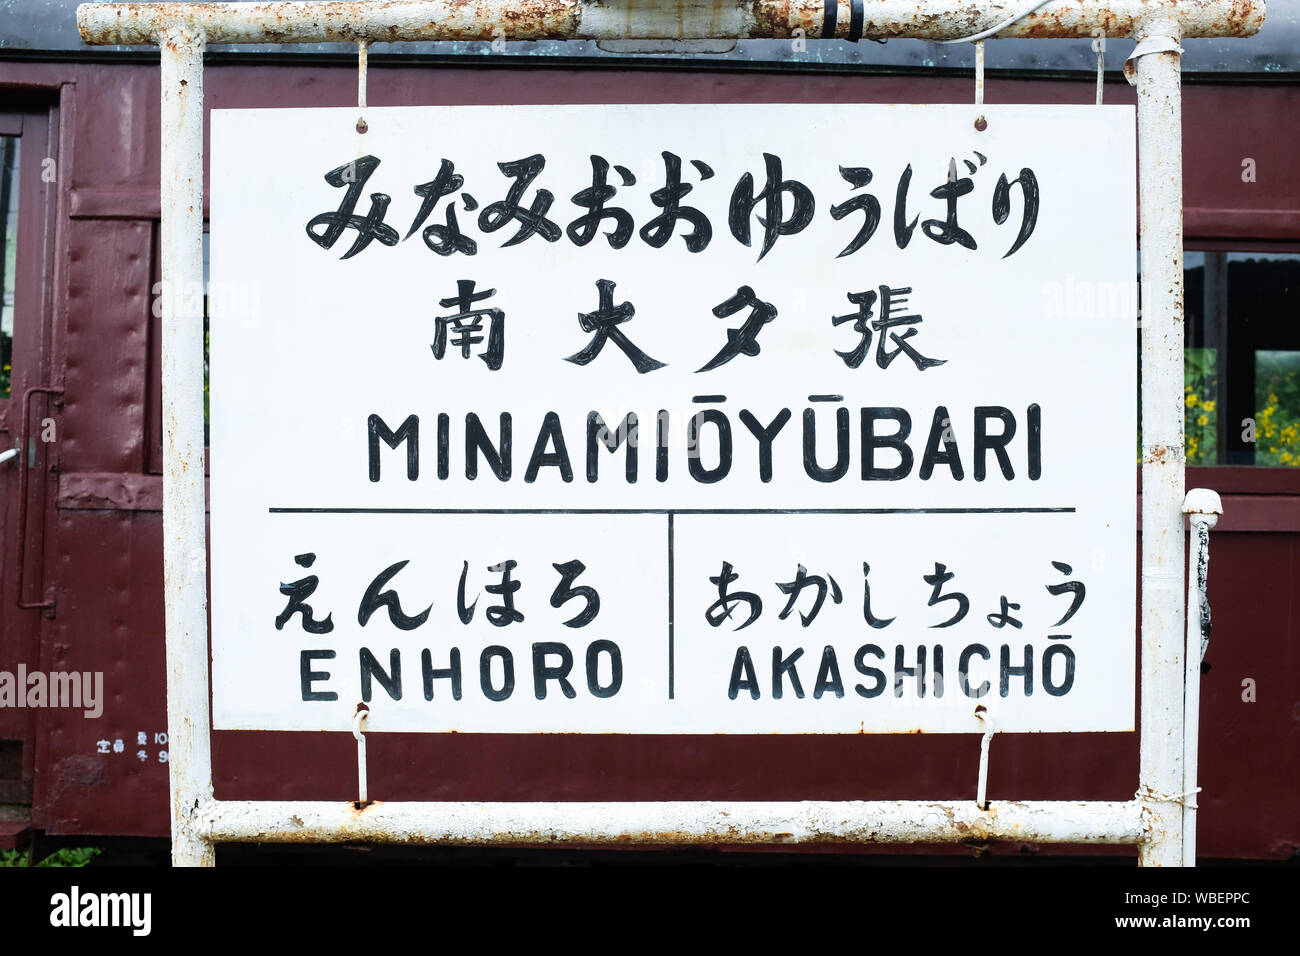 Minami-Oyubari station sign on the decommissioned Mitsubishi Minami-Oyubari Railway in Yubari, Hokkaido. Stock Photo